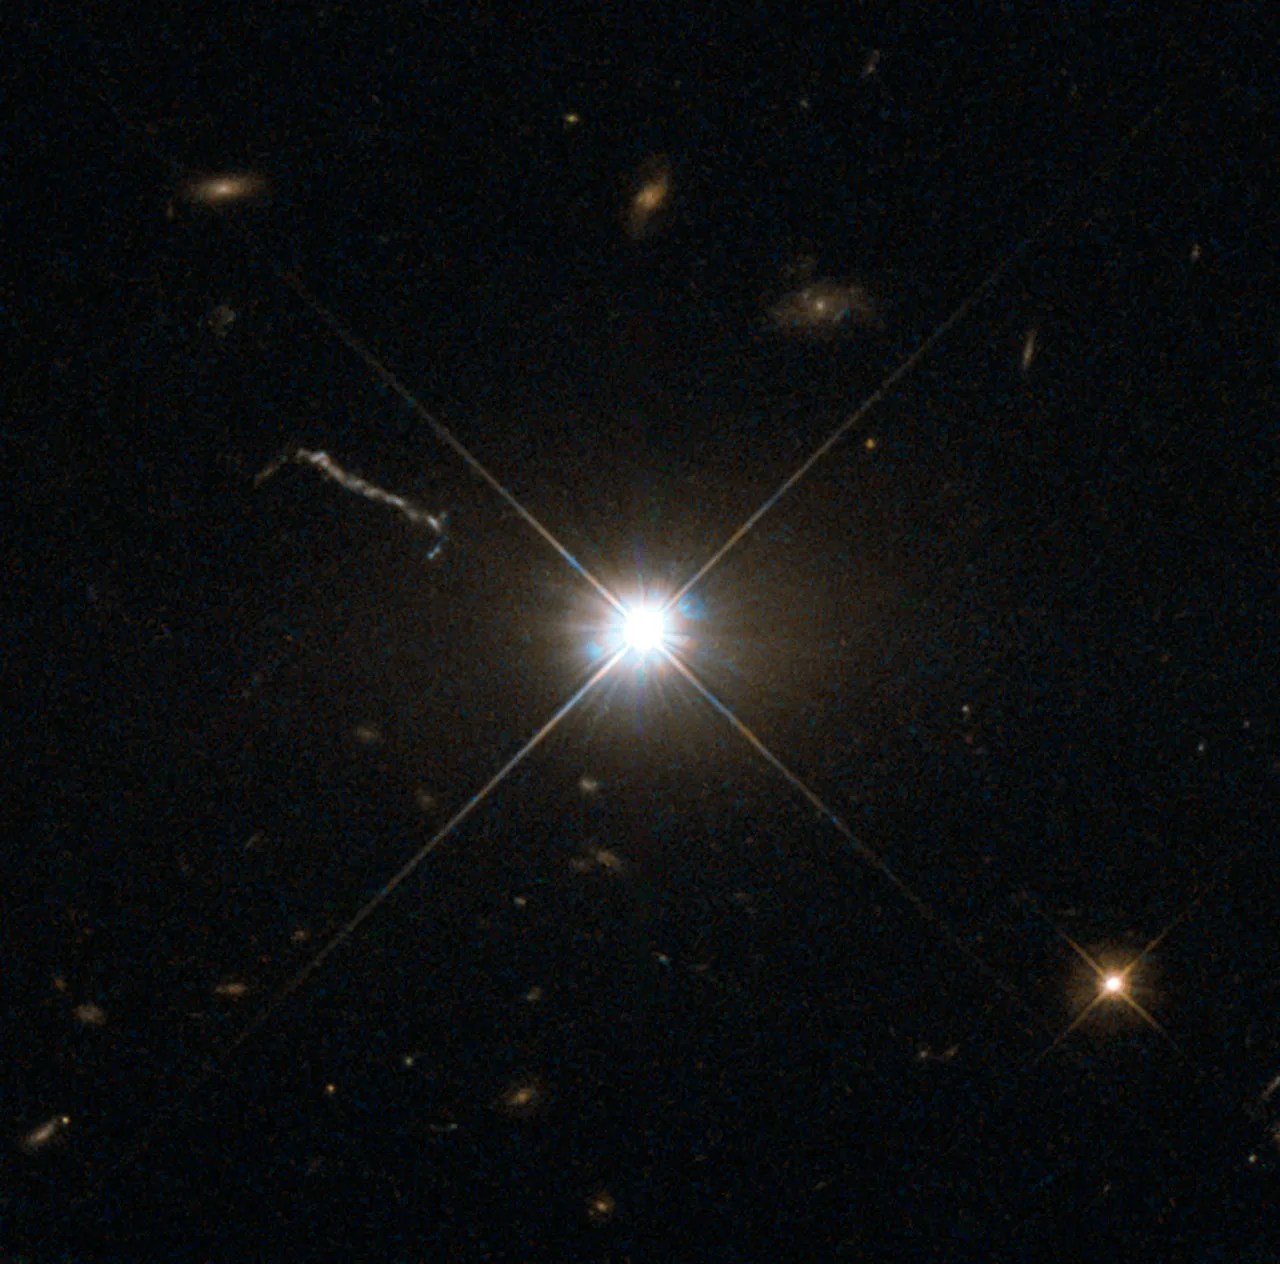 Brilliant radial quasar amid space debris